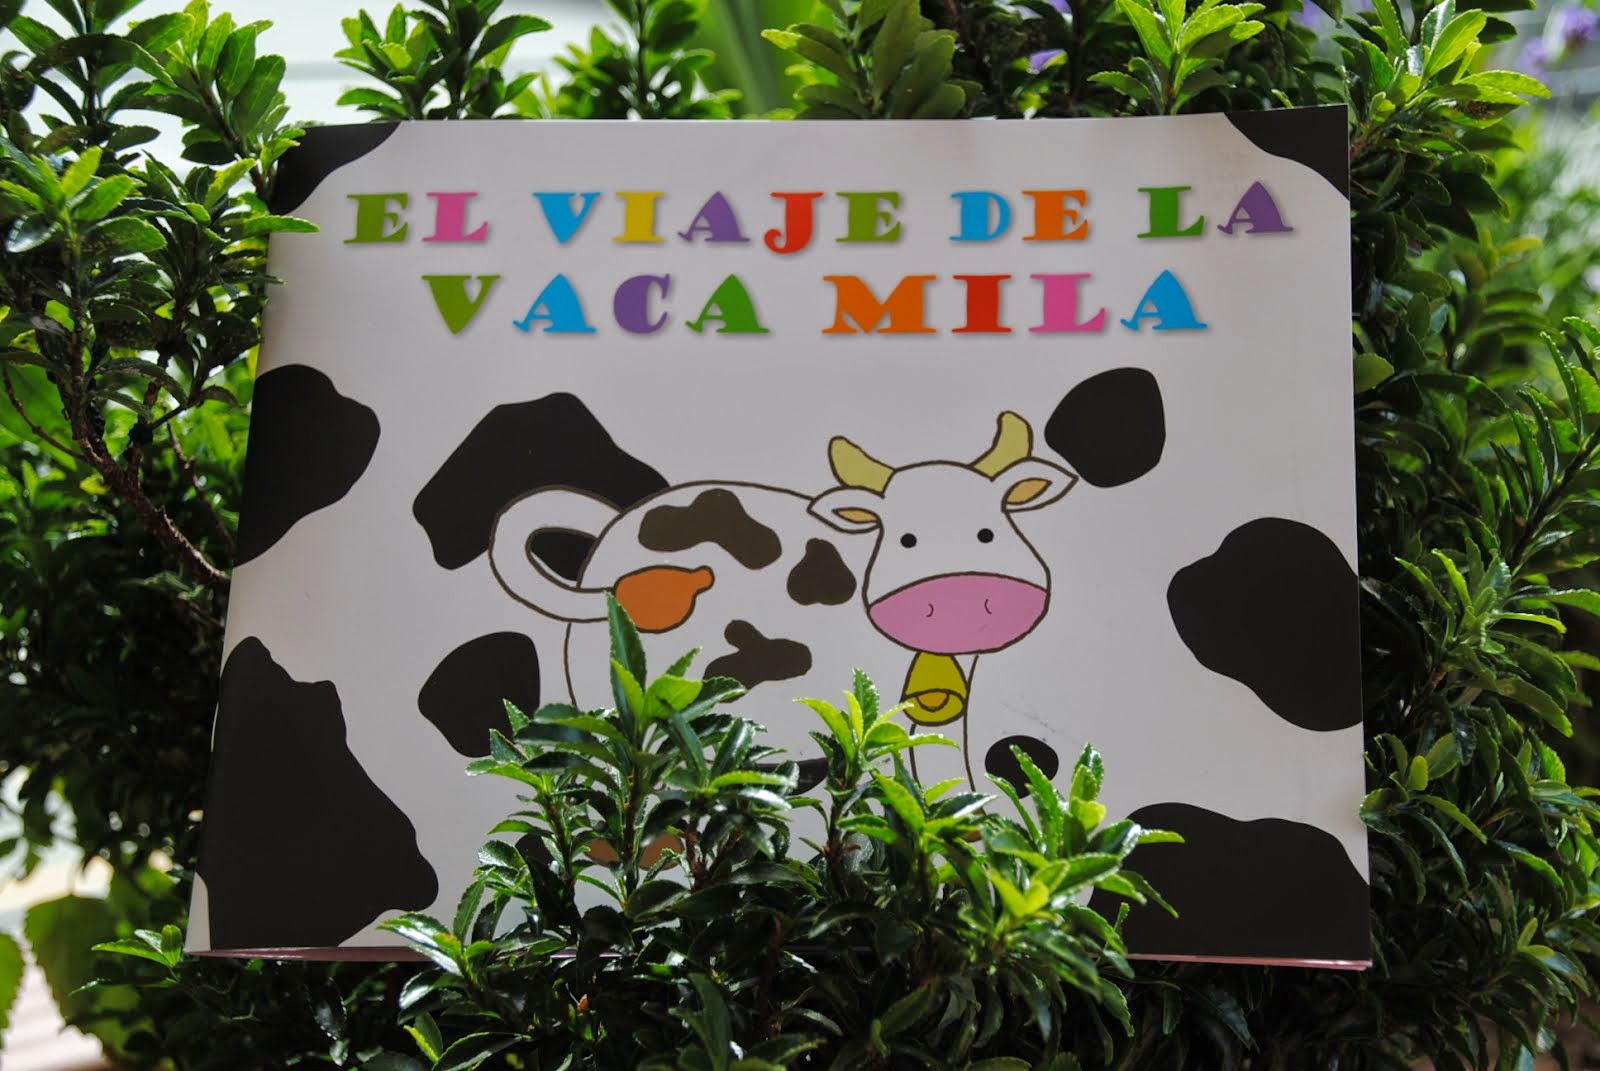 "El viaje de la vaca Mila"